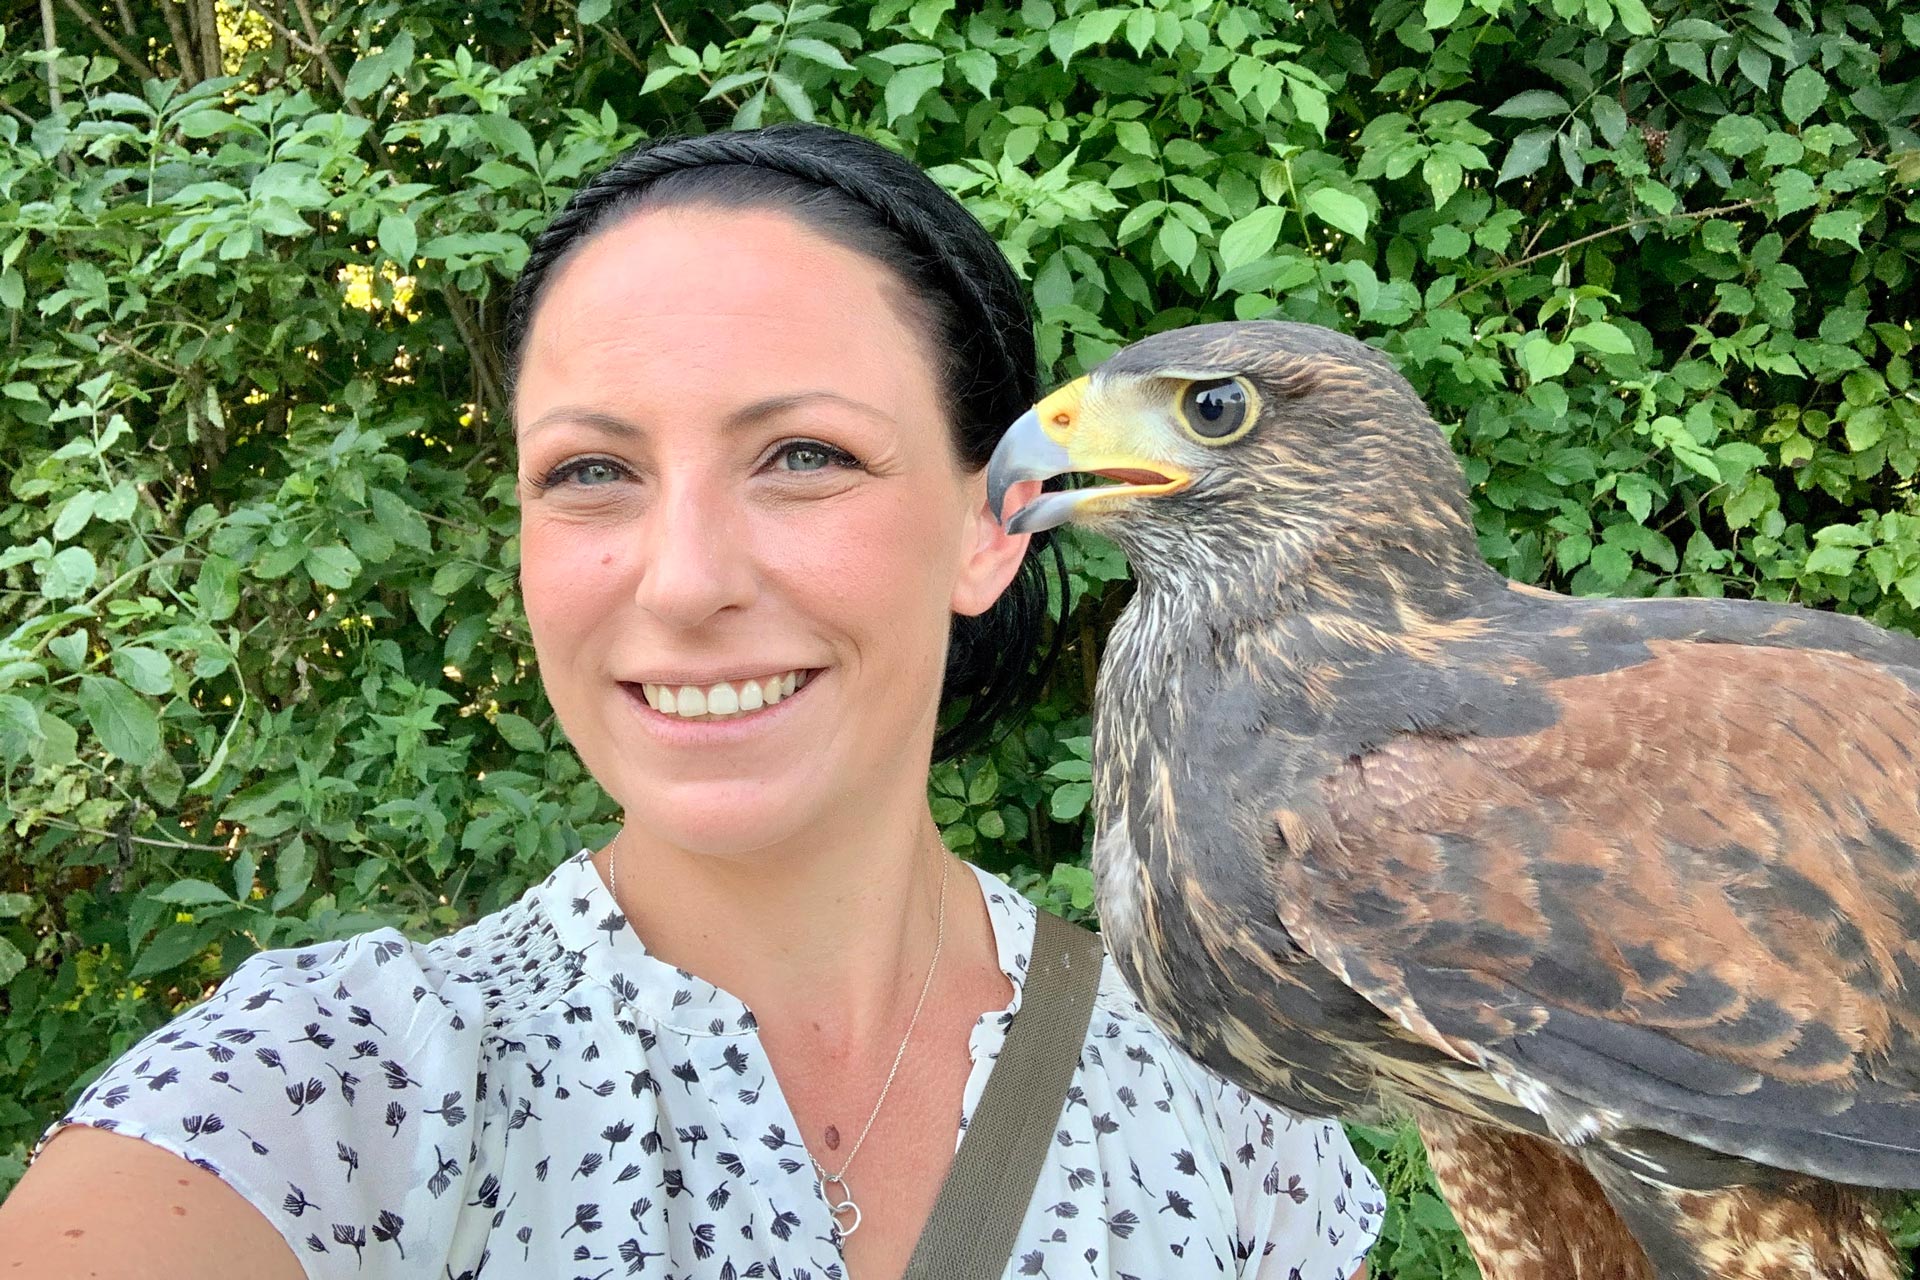 Jagd mit Greifvögel, Claudia Lembach über die faszinierende Falknerei